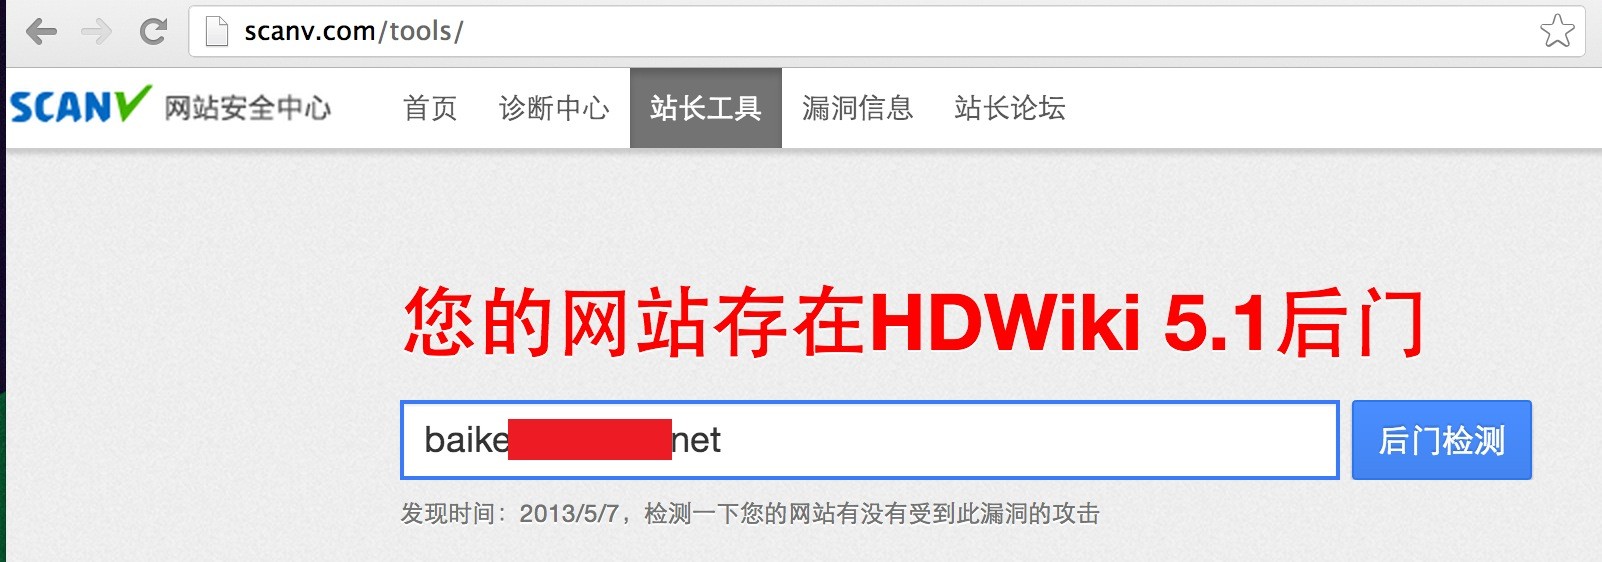 HDWiki 5.1 /style/default/admin/open.gif 后门事件预警